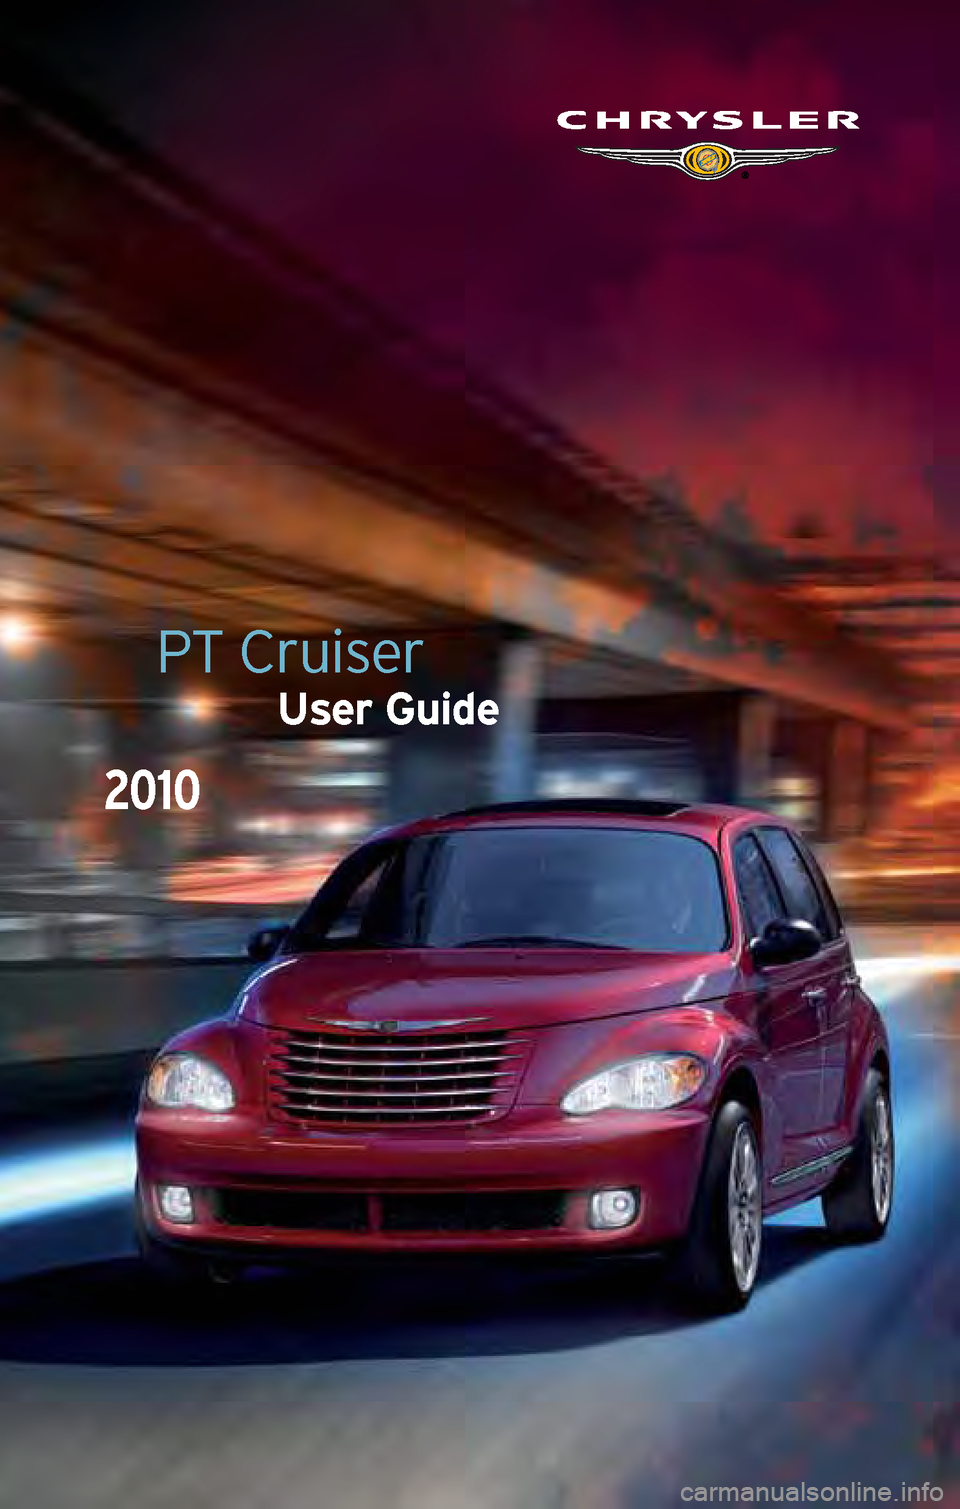 CHRYSLER PT CRUISER 2010 1.G User Guide PT Cruiser
User Guide
2010 